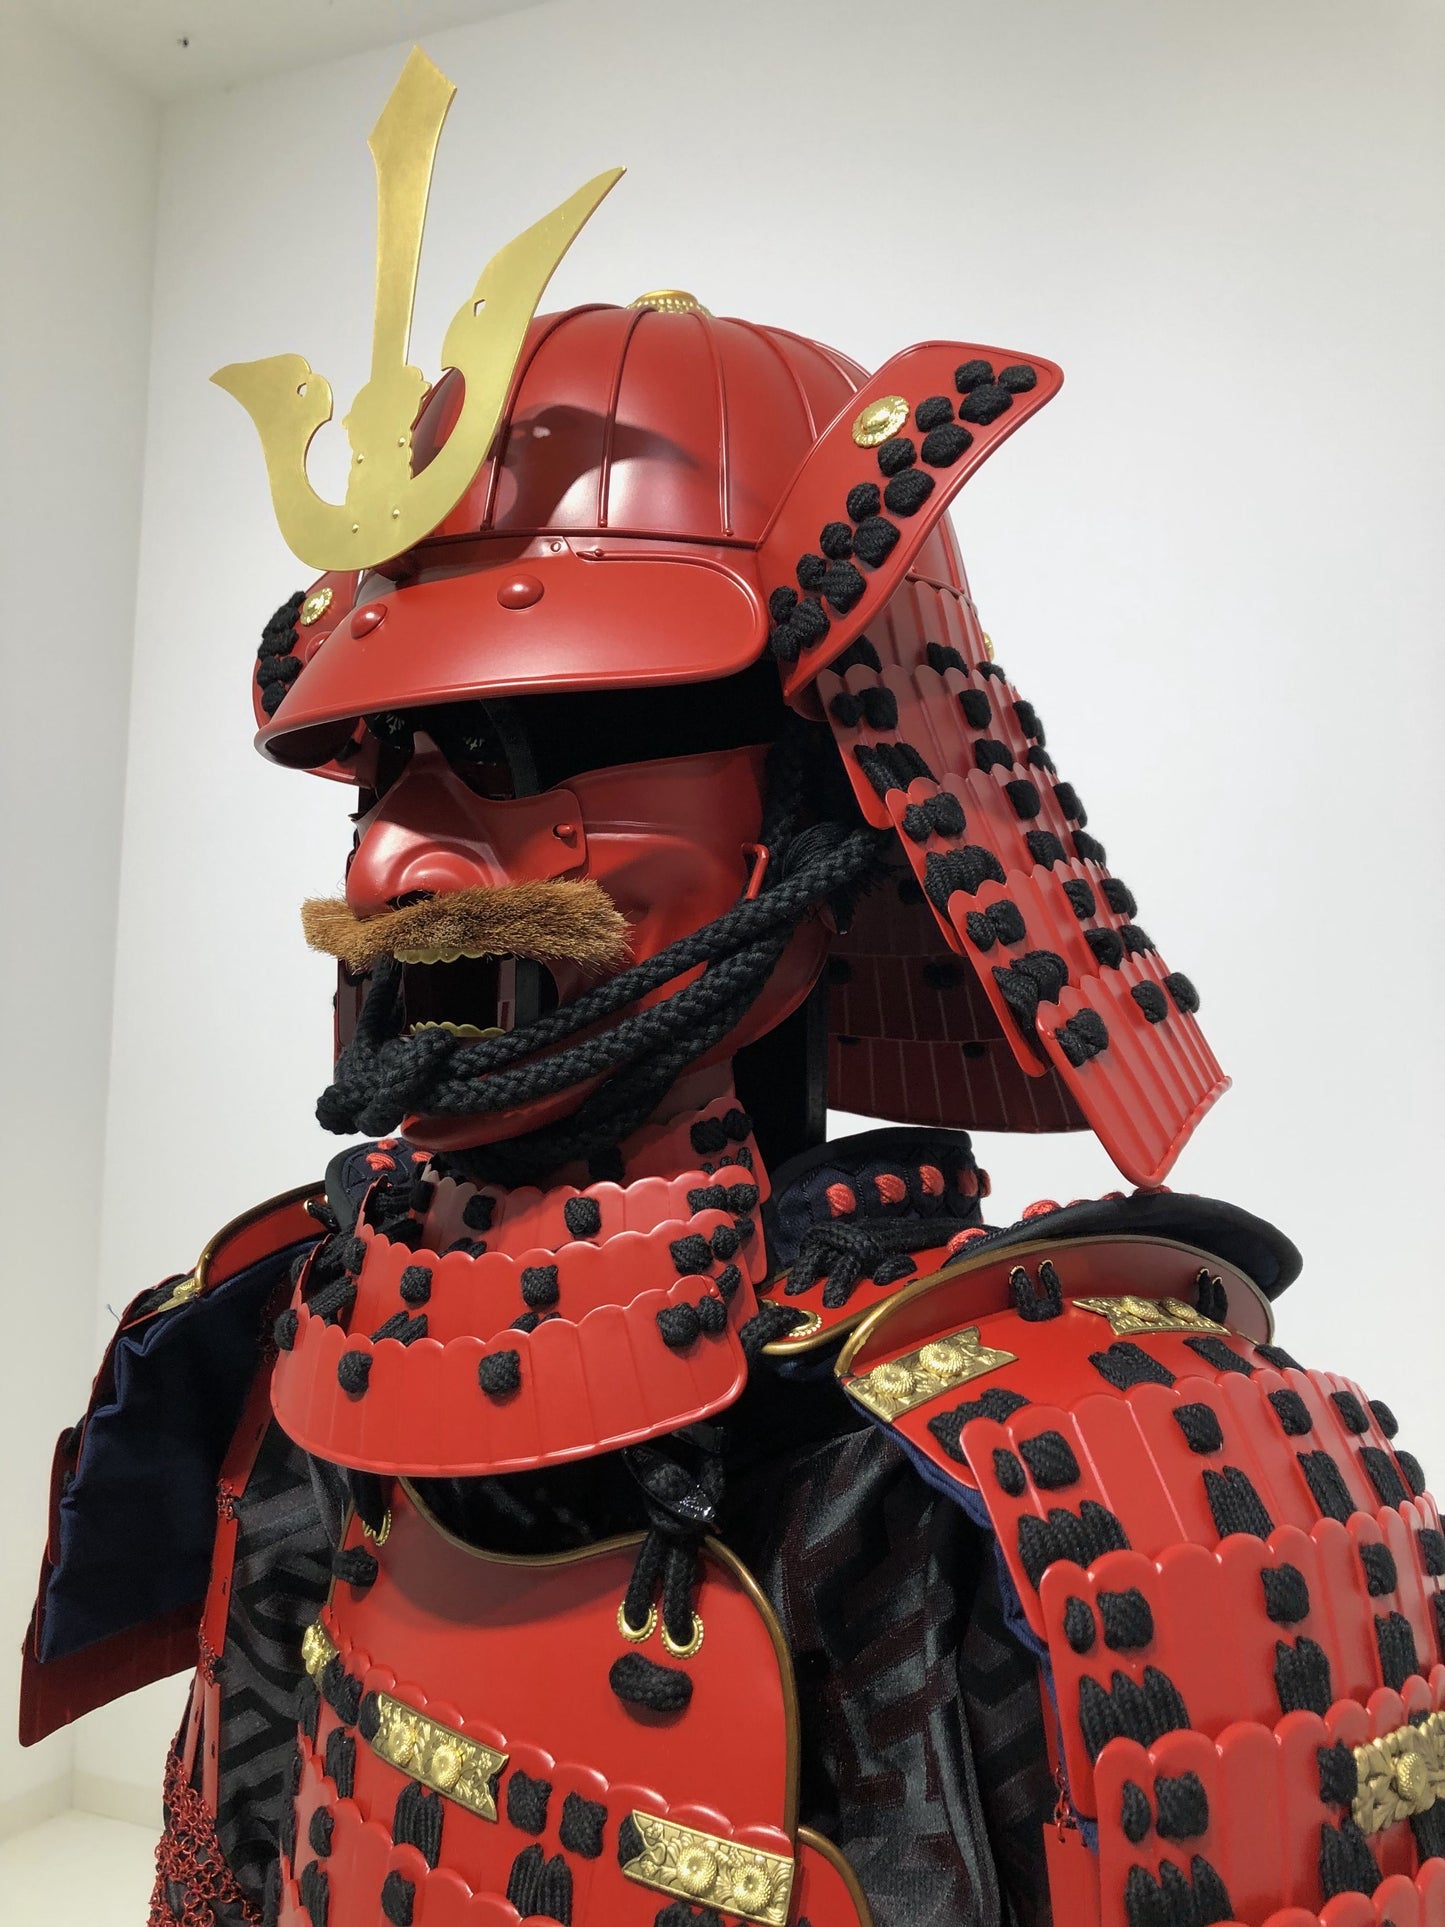 【O-033】Black Thread Odoshi / Iyo Matted Koshitori Armor